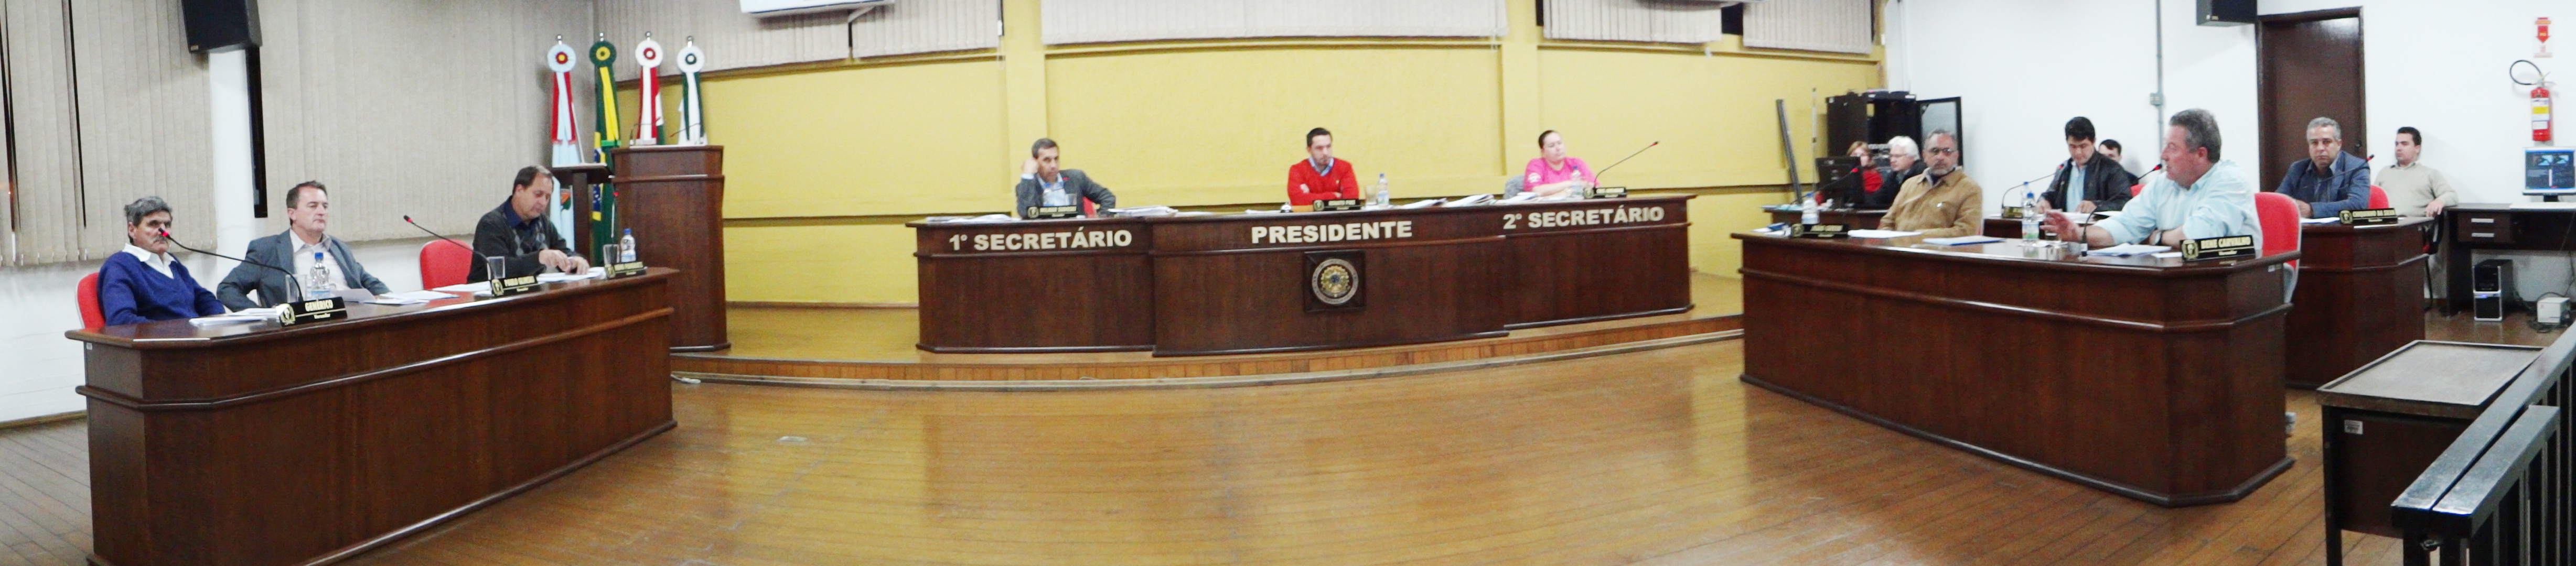 Câmara começa a discutir o PPA e o Orçamento da prefeitura para 2014